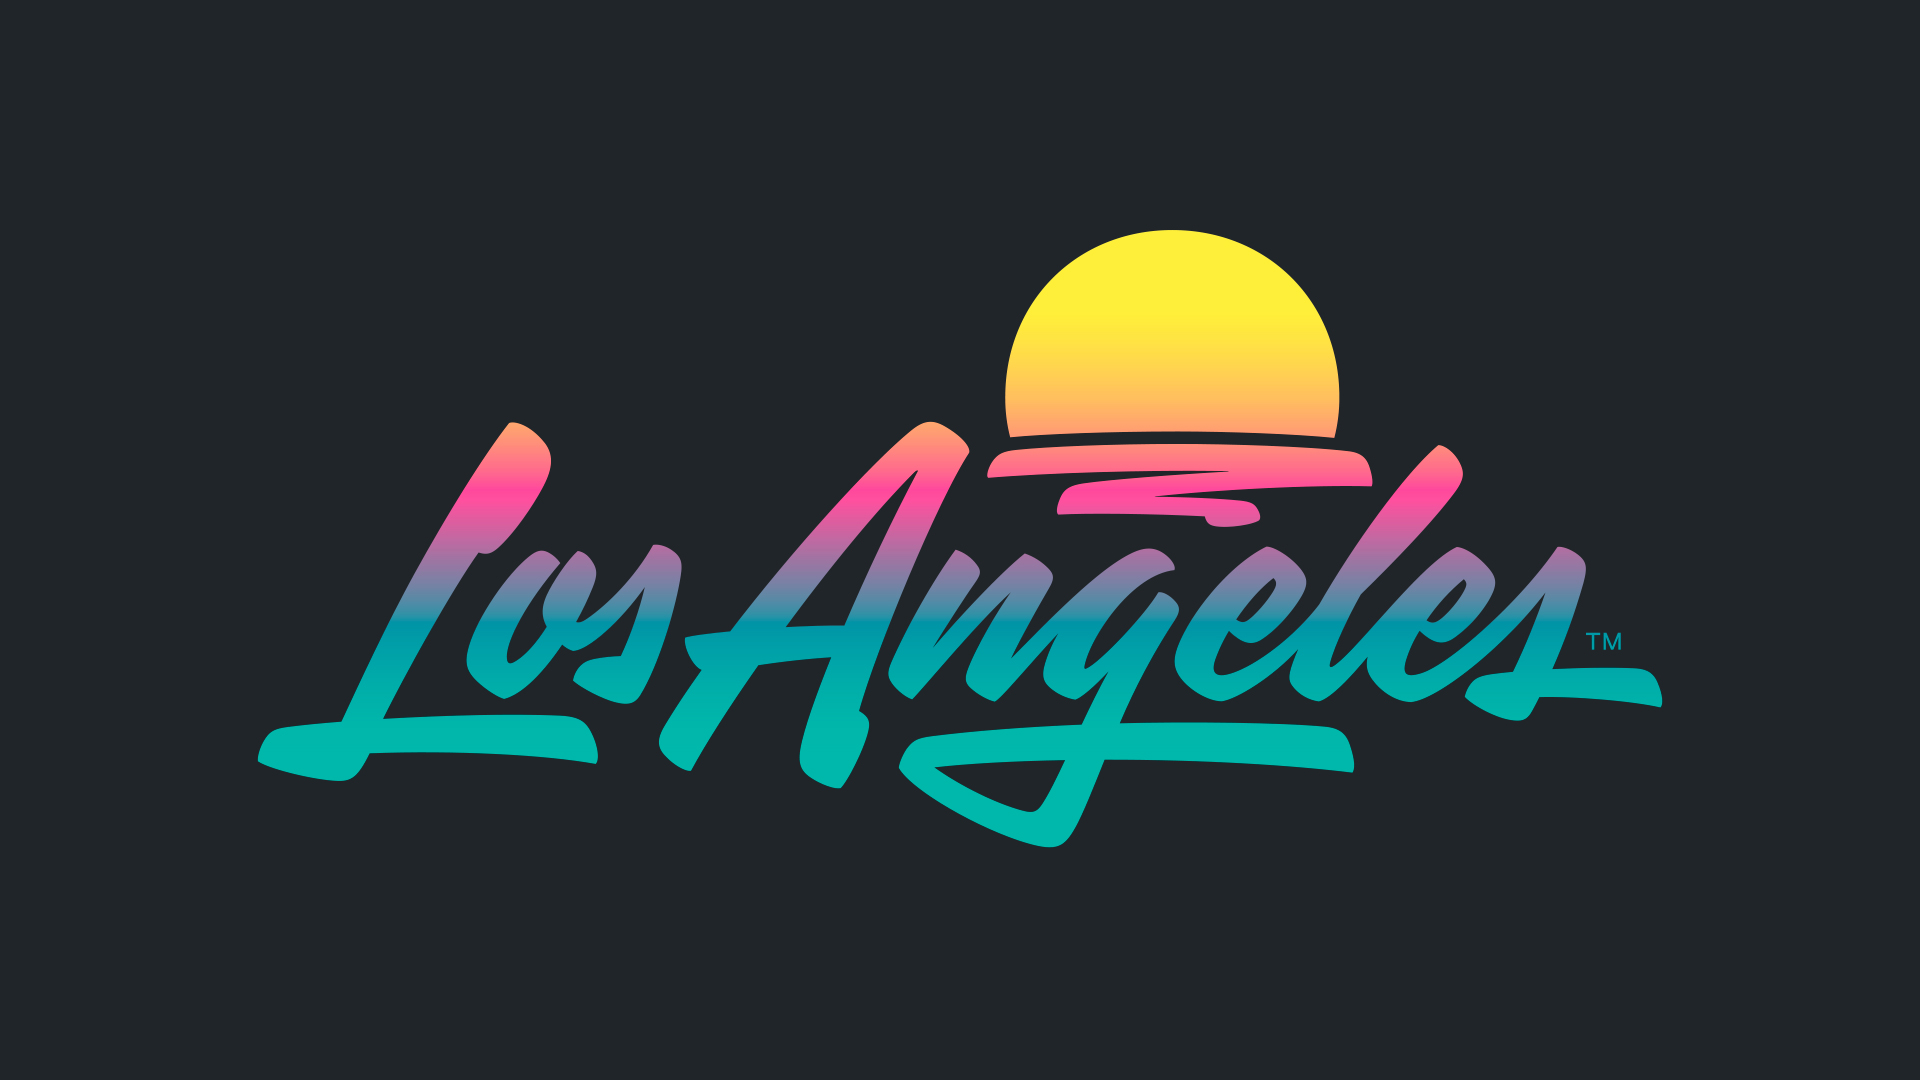 City brand o marca ciudad de Los Angeles